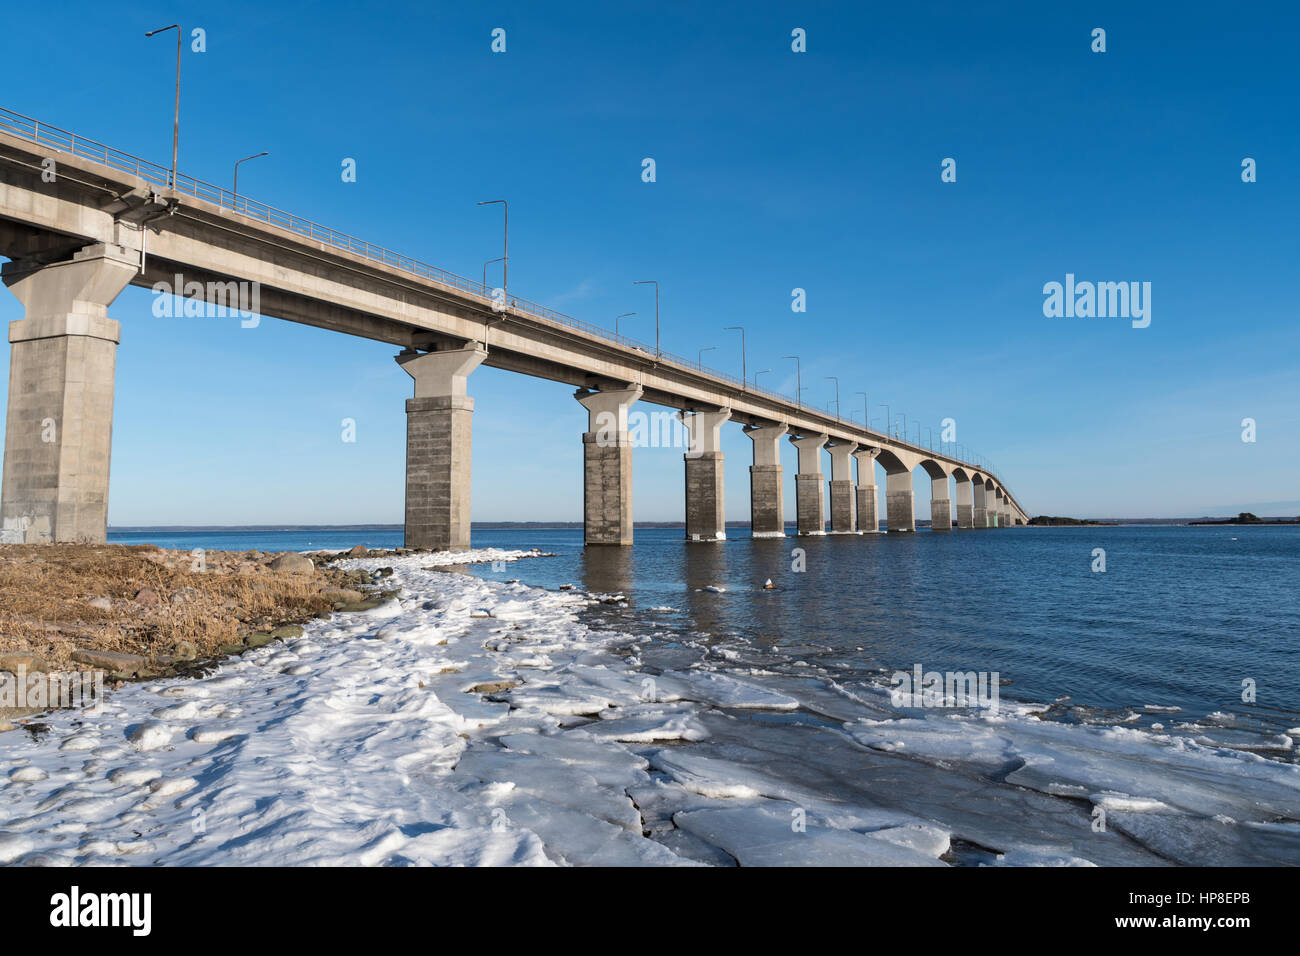 Winter an der Öland-Brücke in Schweden. Die Brücke verbindet die Insel Öland mit dem Festland Schweden Stockfoto